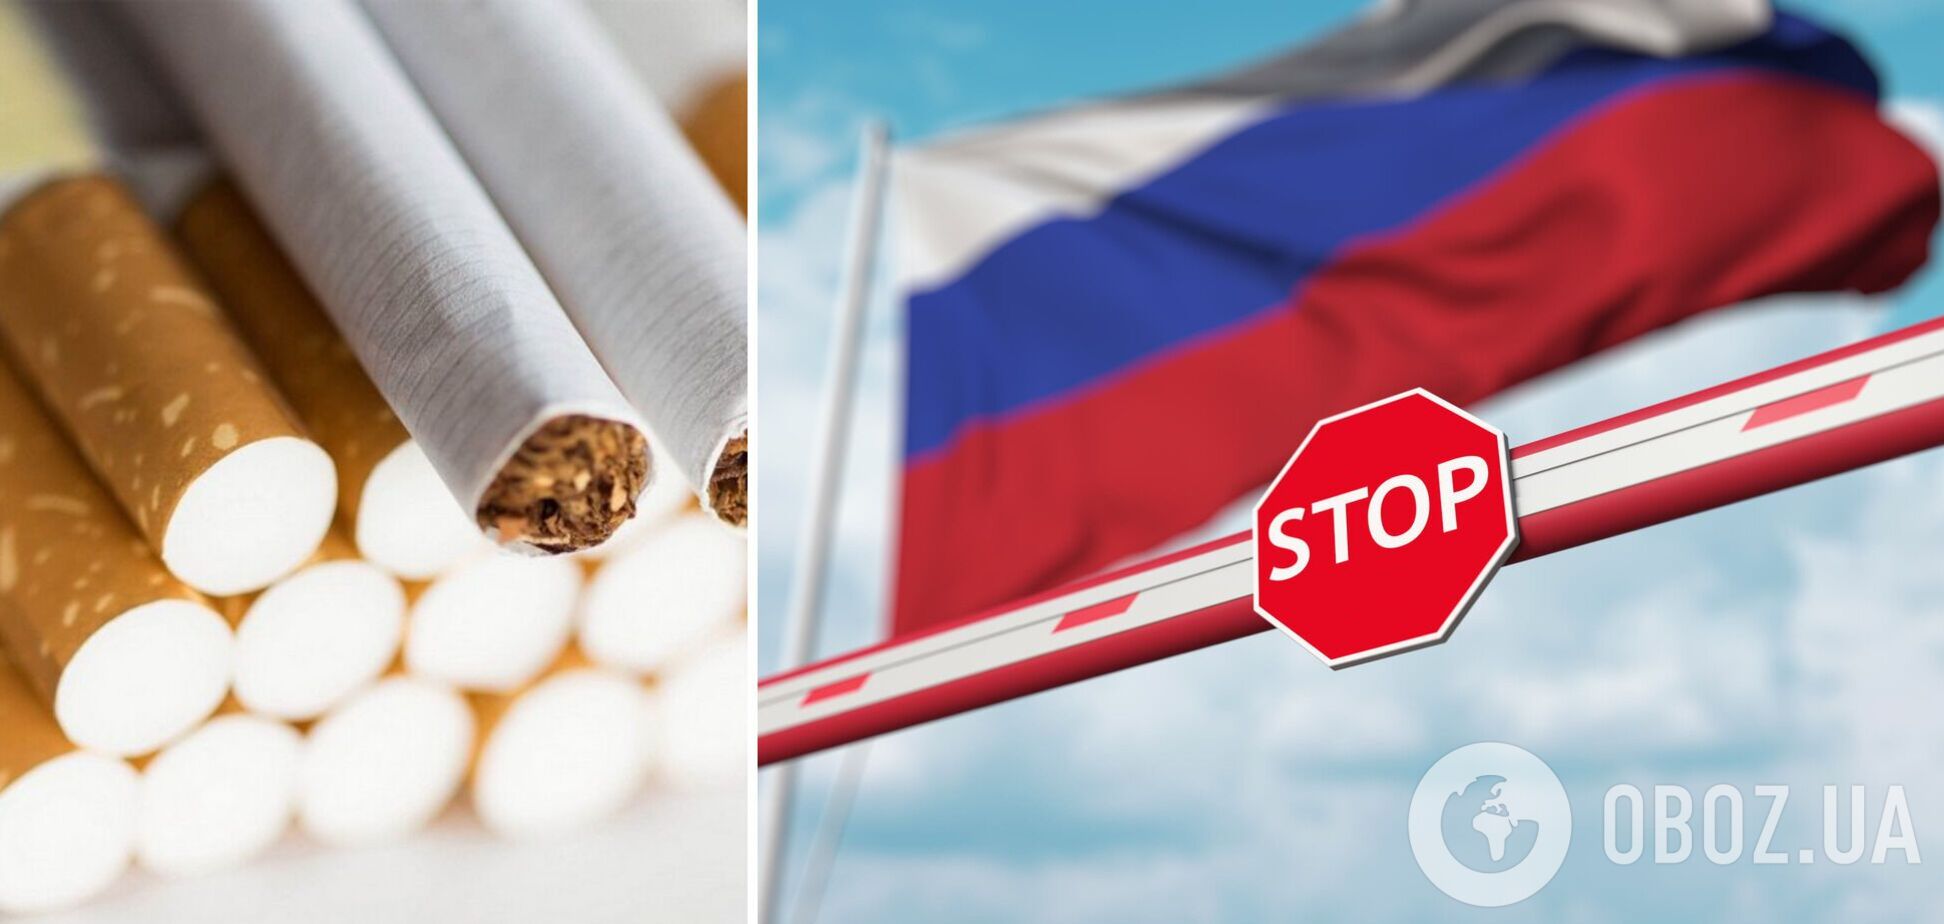 Один зі світових лідерів з виробництва цигарок Philip Morris йде з Росії